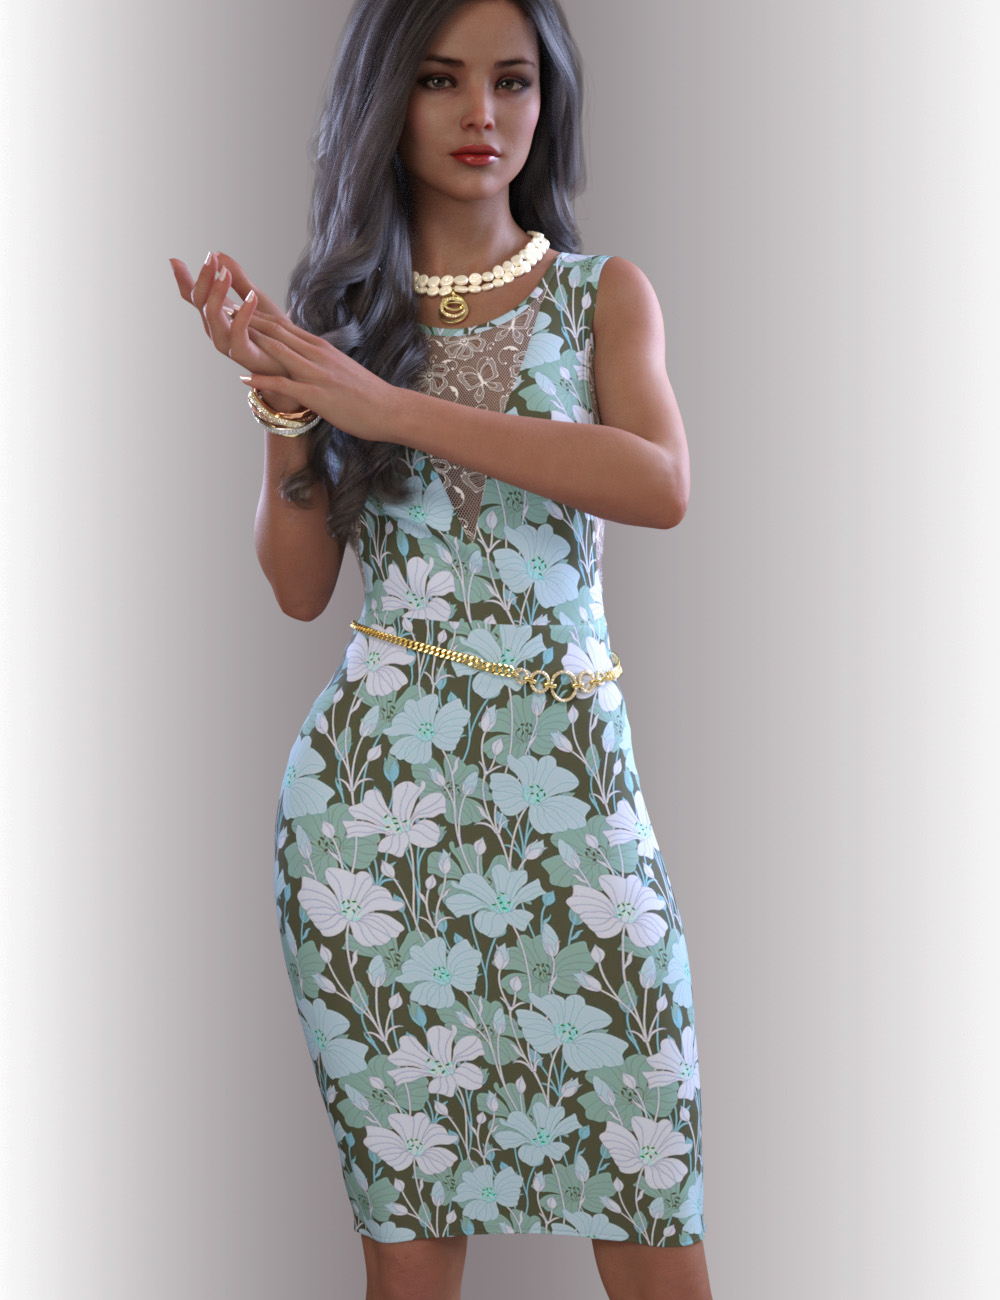 dForce Imogen Outfit for Genesis 8.1 Females by: OnnelArryn, 3D Models by Daz 3D